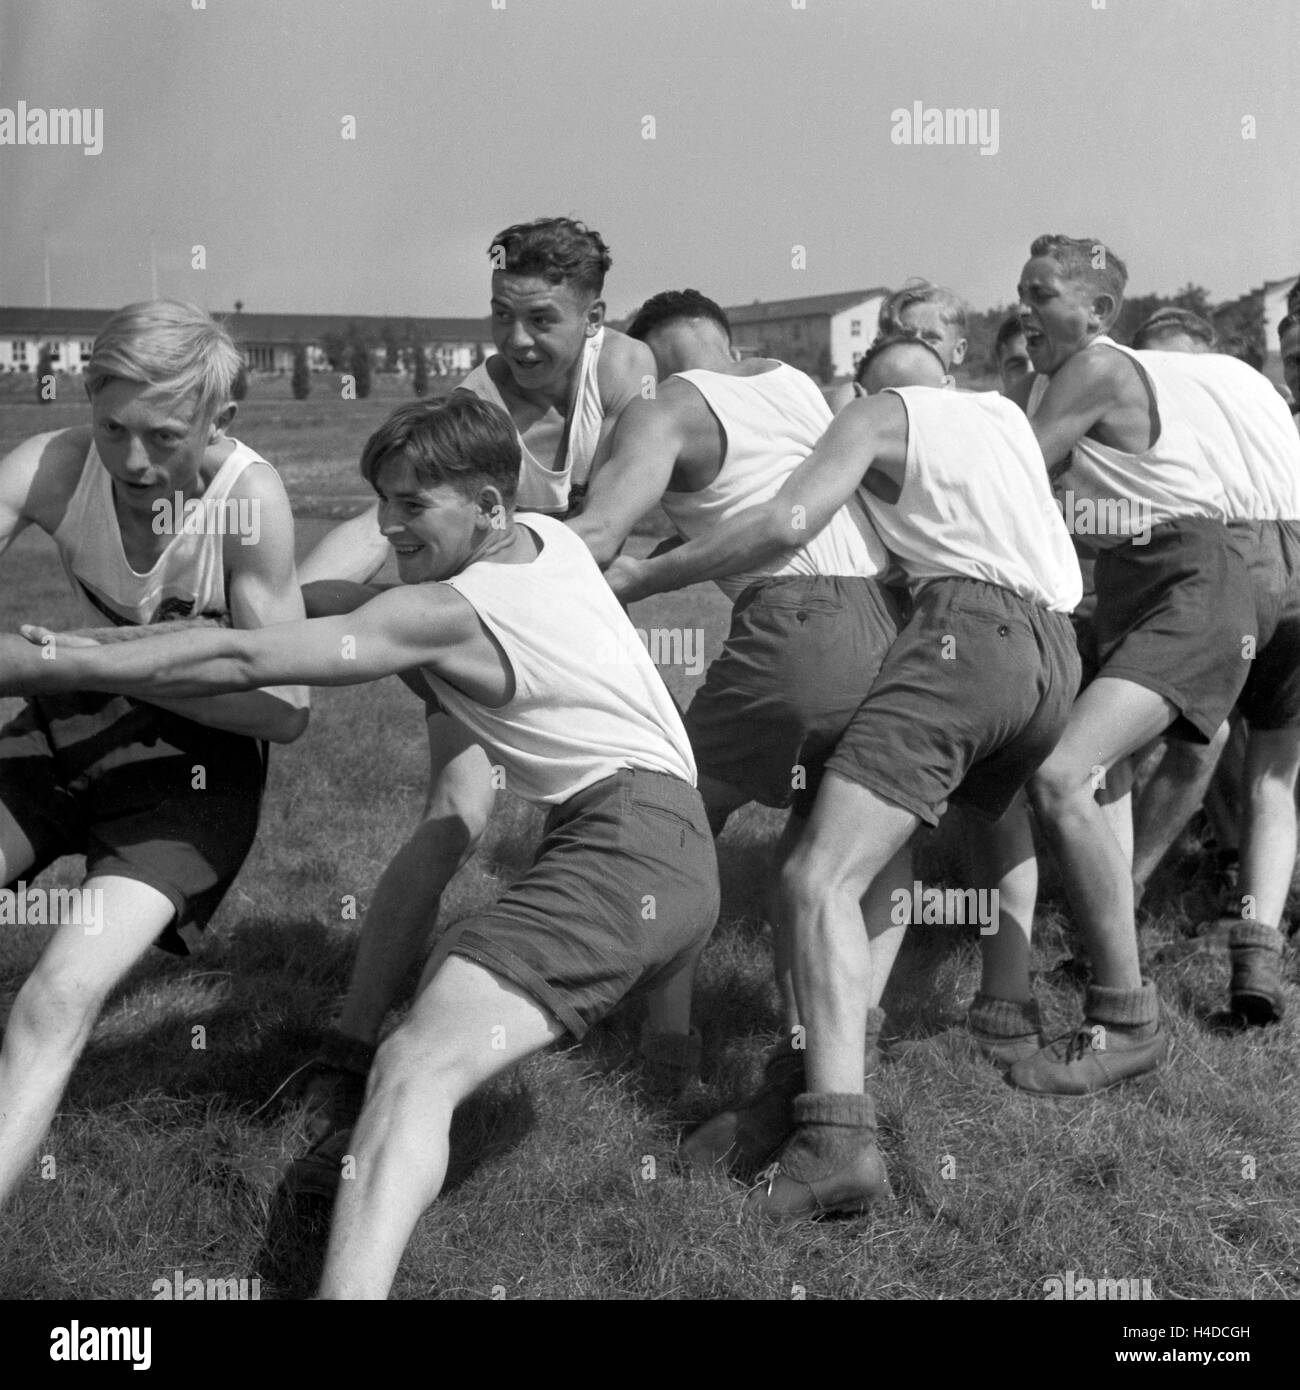 Original-Bildunterschrift: Tauziehen gehört zu den beliebtesten Übungen beim Deporte, Deutschland 1940er Jahre. Tug-of-war es uno de los ejercicios más favorito, Alemania 1940. Foto de stock